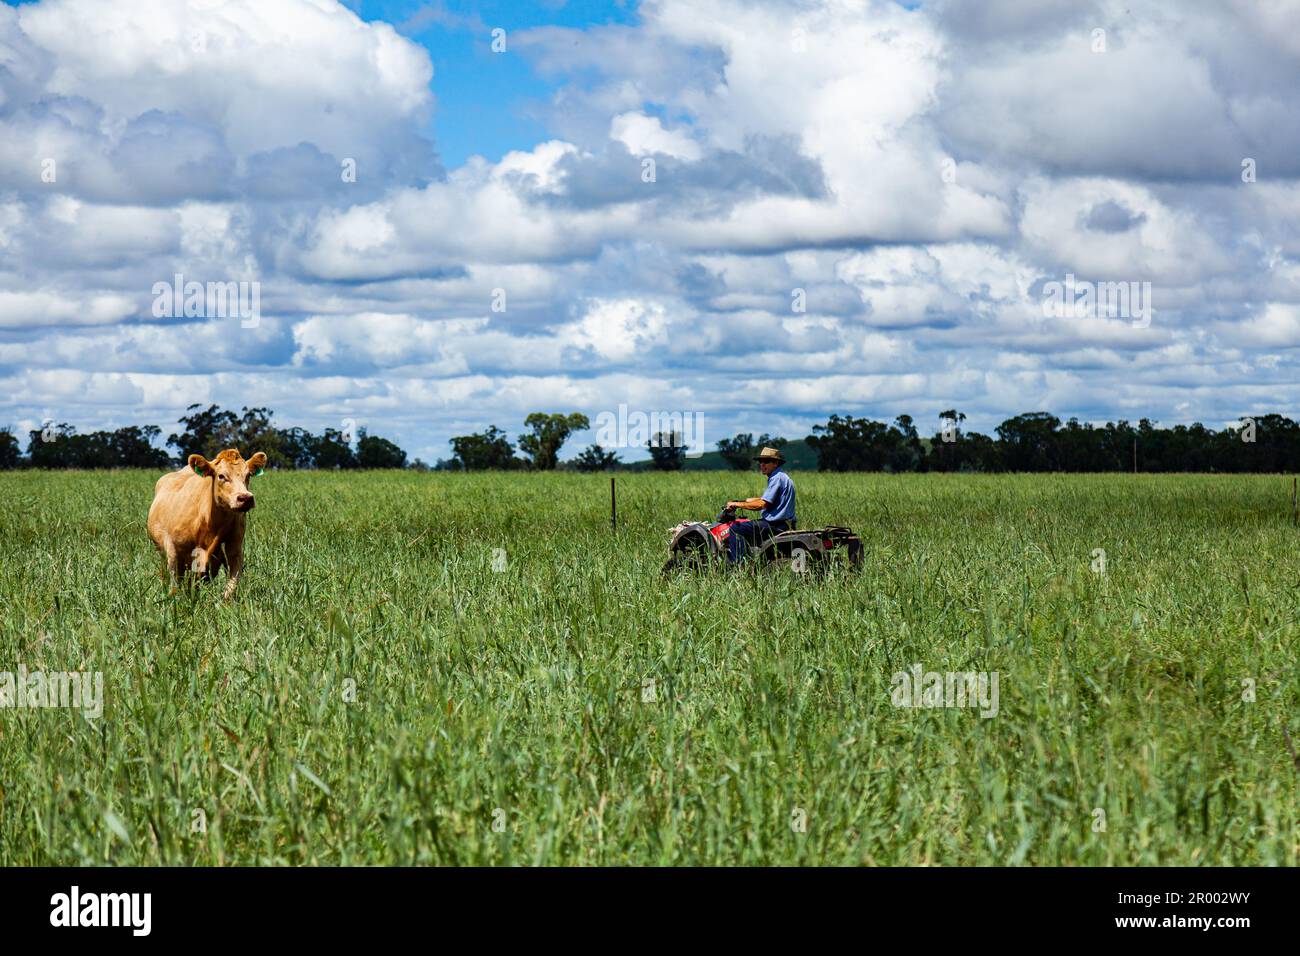 Ein Bauer auf dem Quad, der Rinder in der grünen Blaugras-Koppel kontrolliert Stockfoto